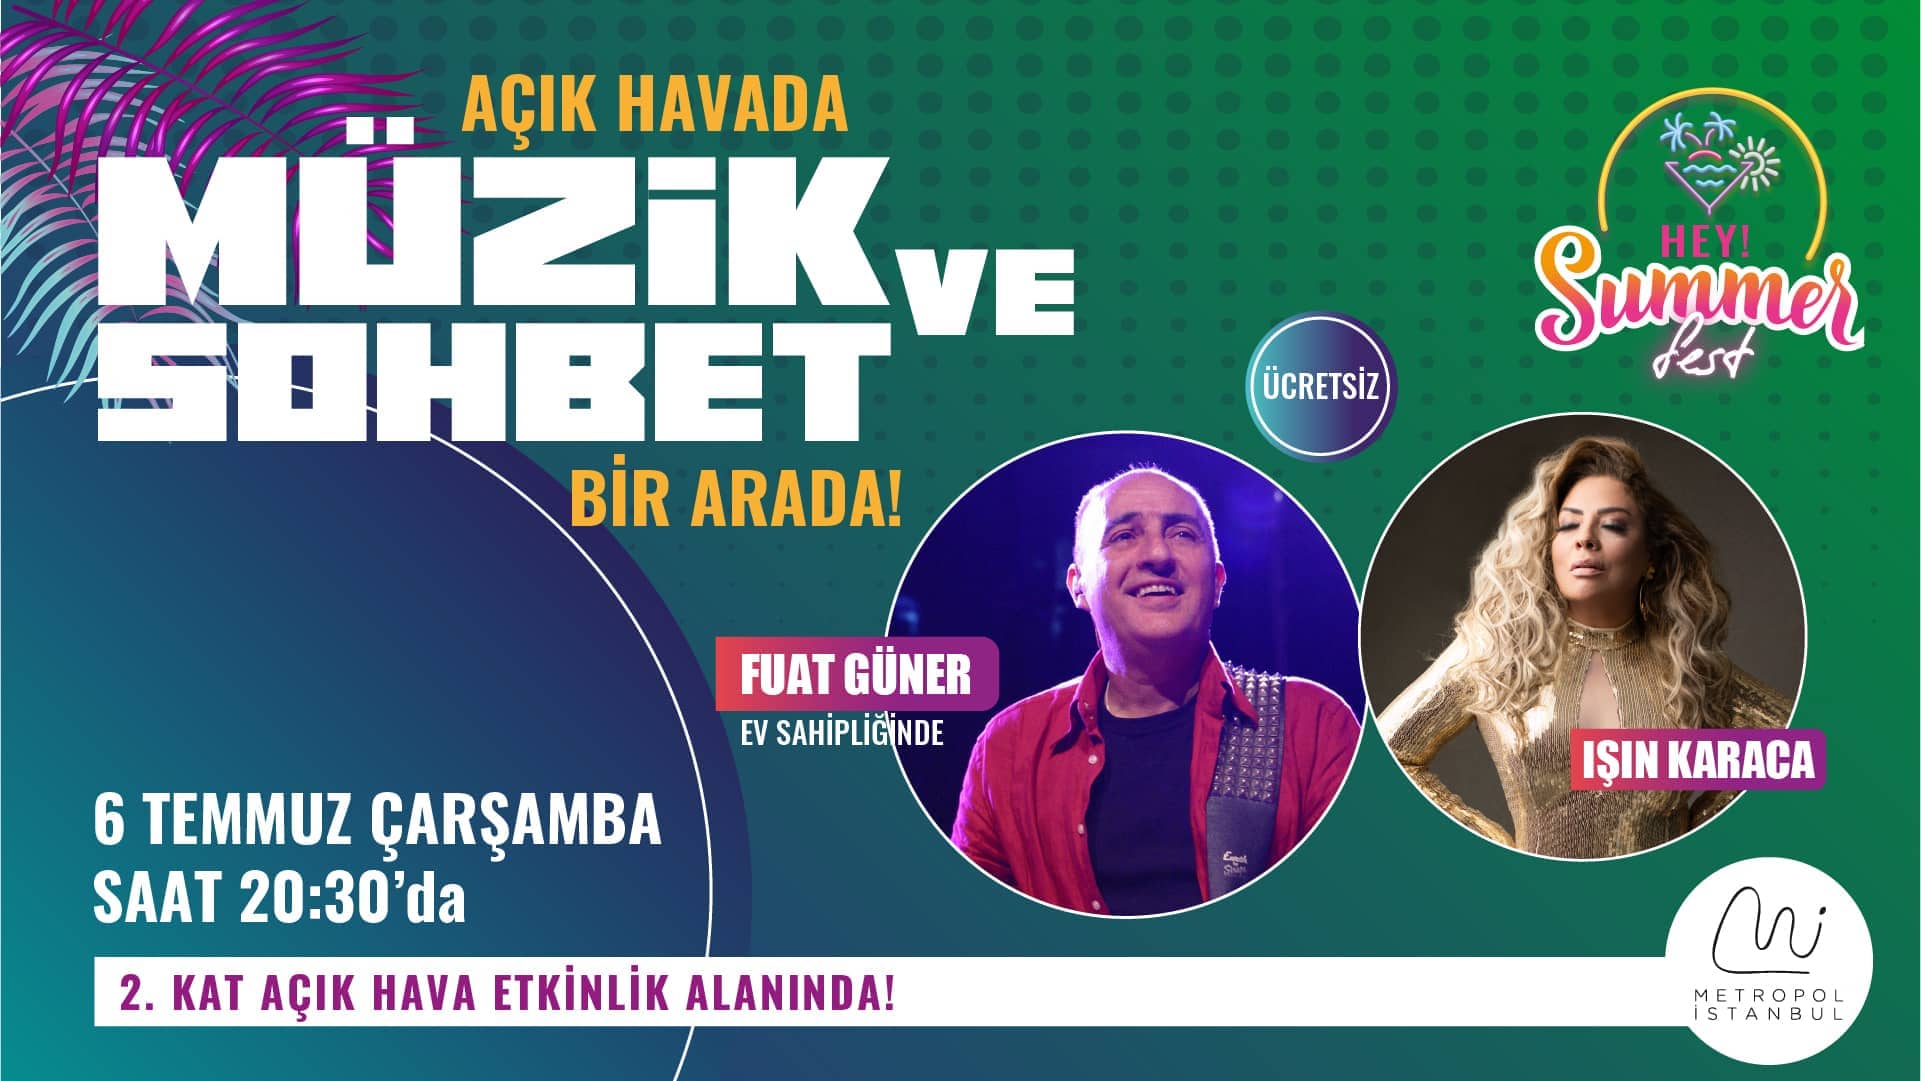 Hey! Summer Fest ile Metropol İstanbul’da yaz bambaşka!